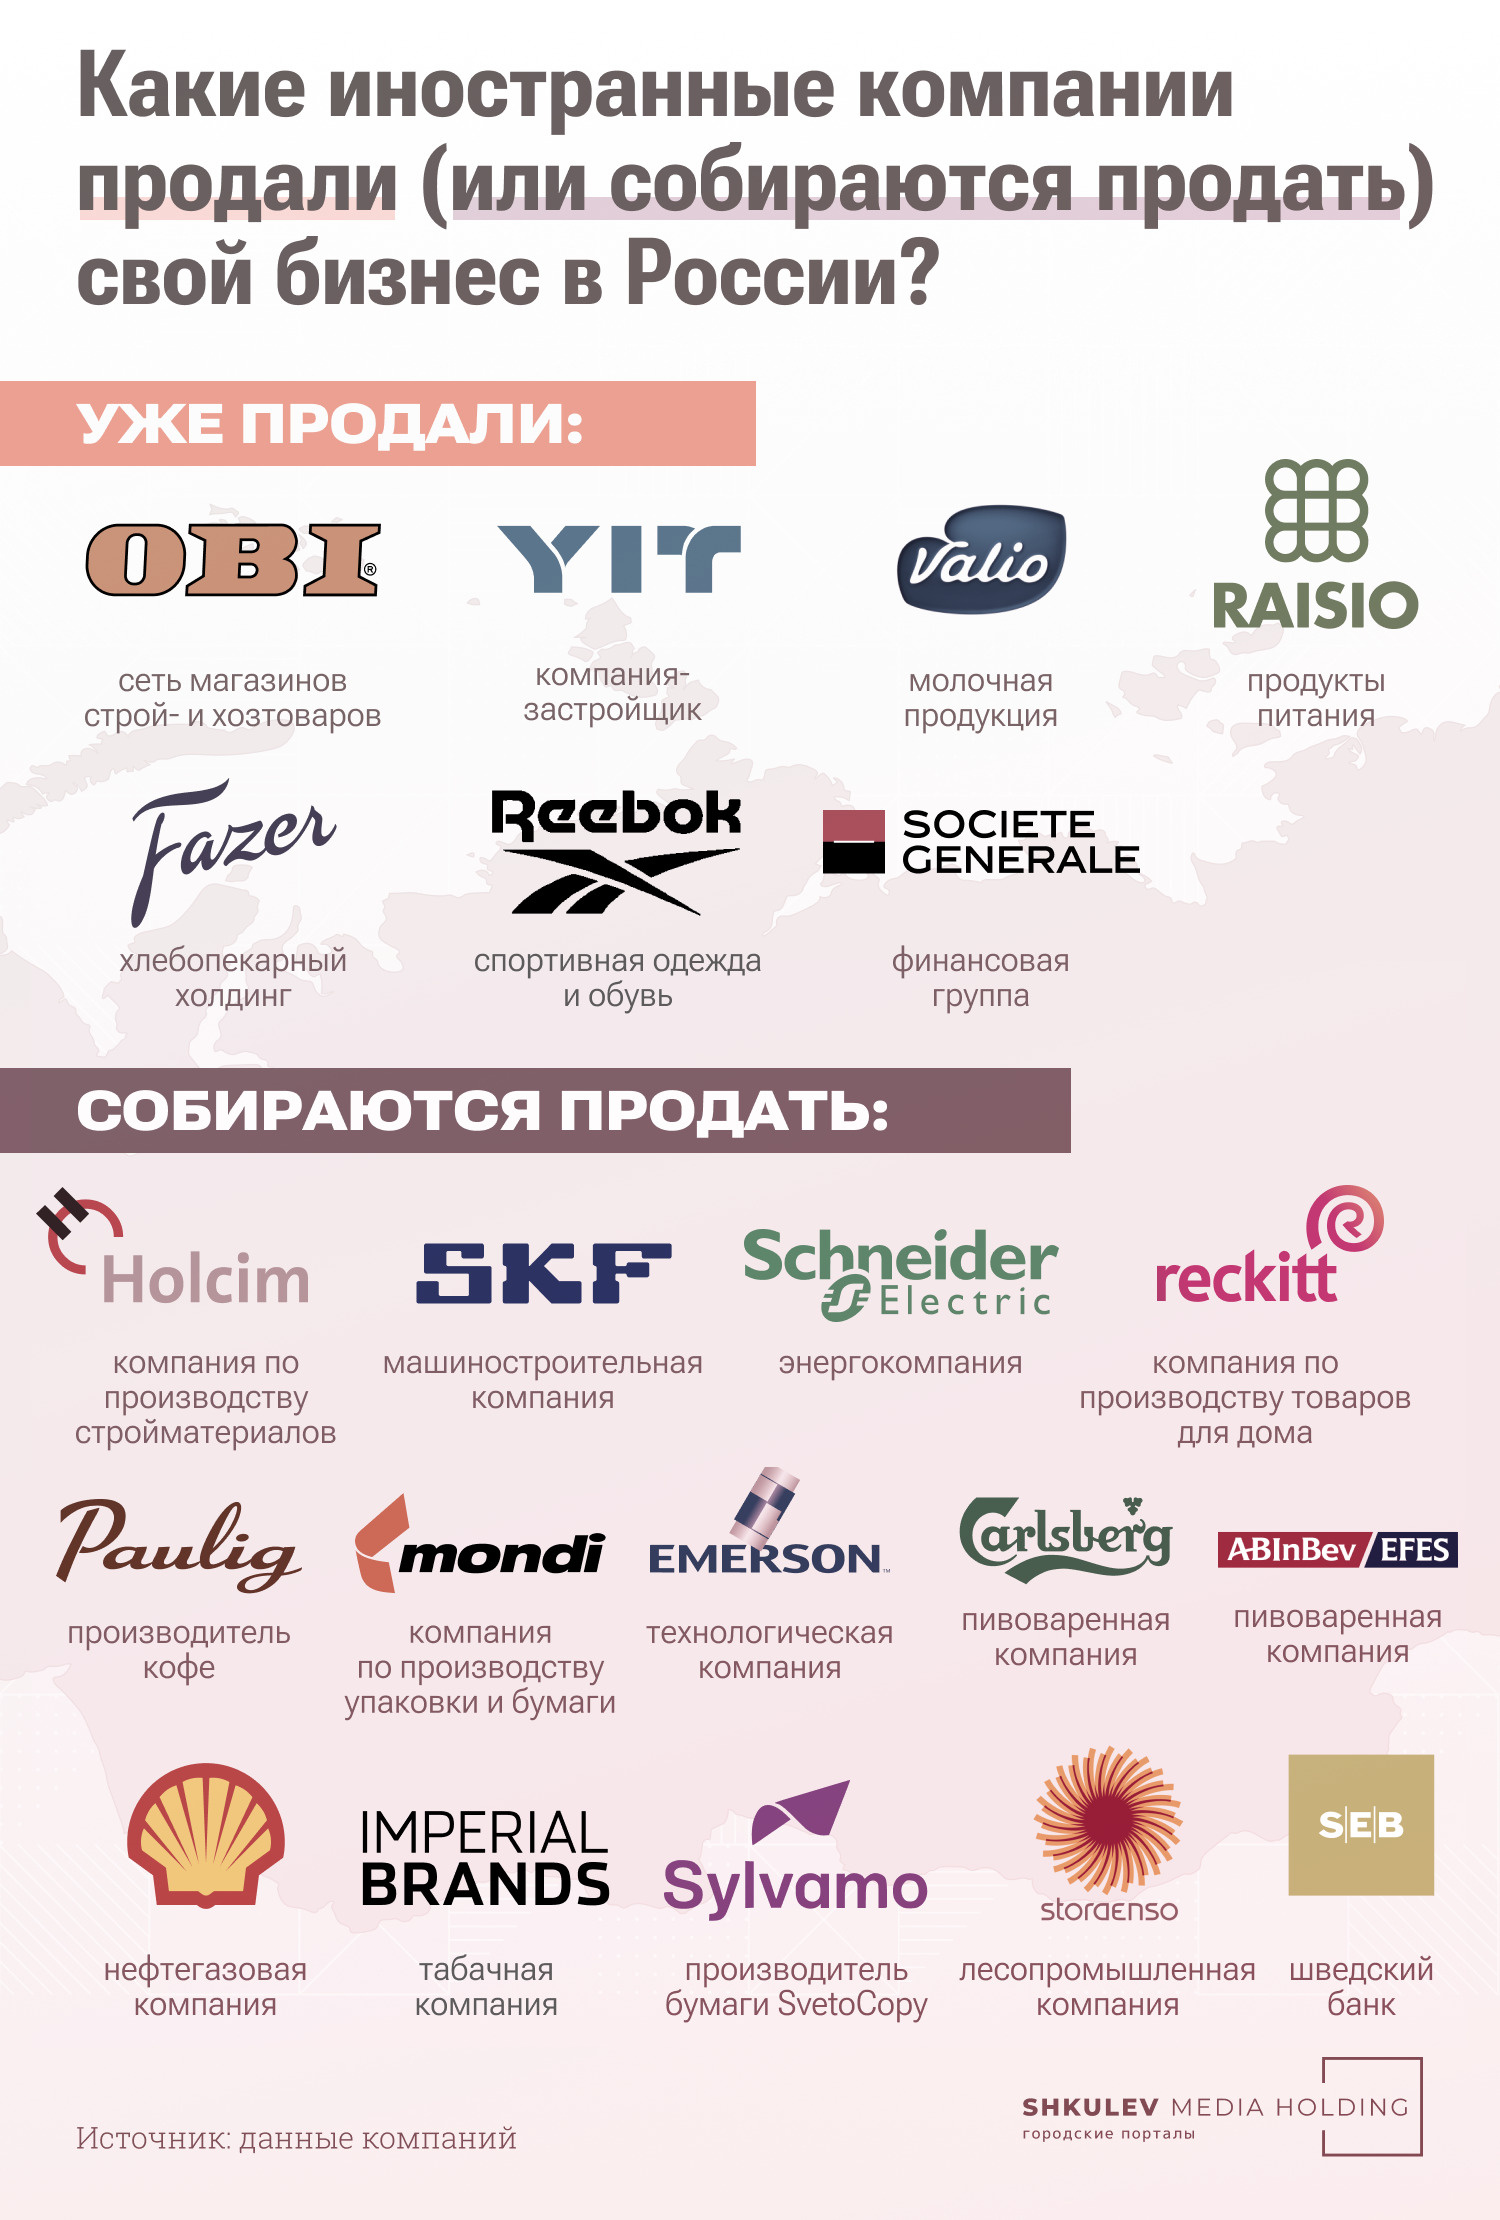 Иностранные компании в России